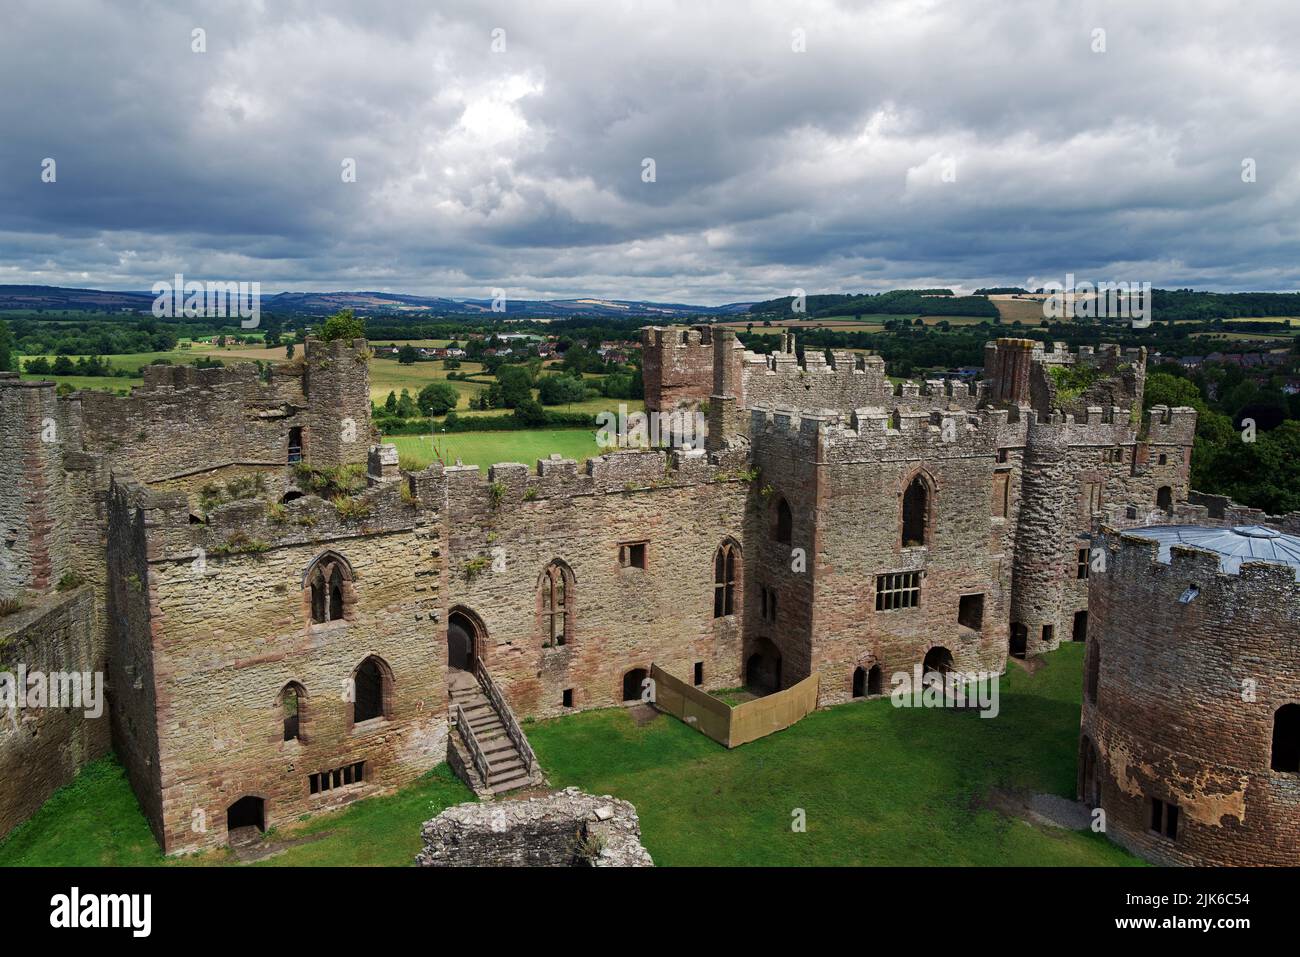 Le château de Ludlow est une fortification médiévale dans la ville de Ludlow, dans le Shropshire. Il a probablement été fondé par Walter de Lacy vers 1075. Banque D'Images